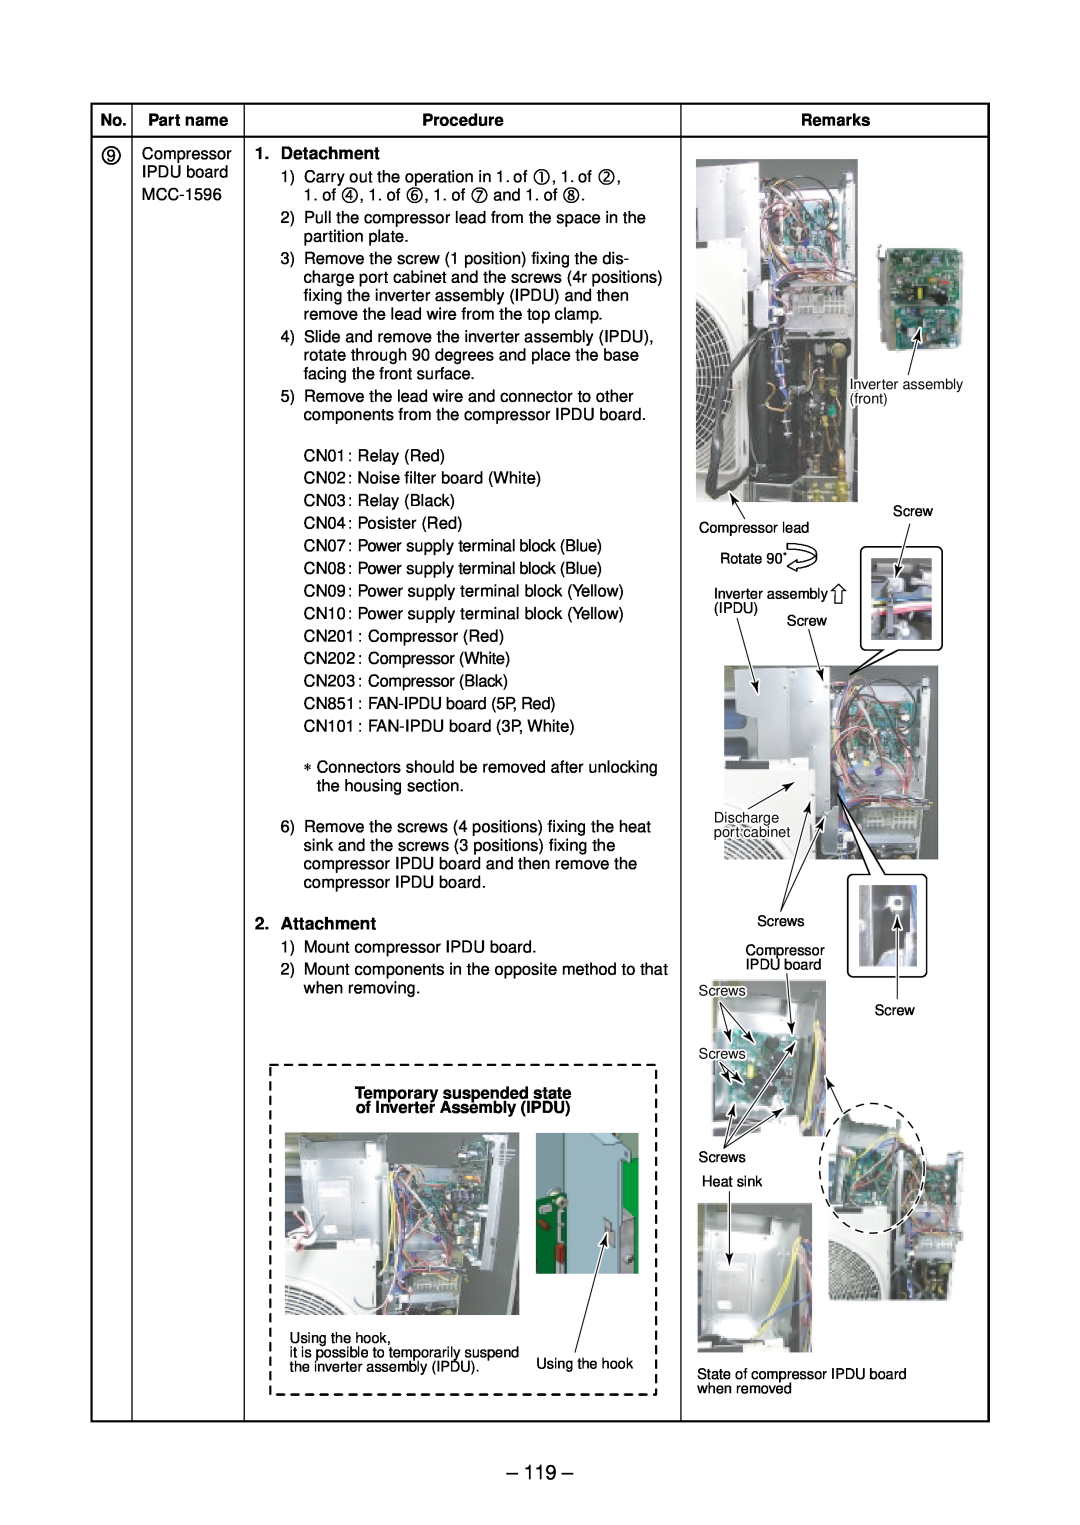 Toshiba RAV-SM2804AT7ZG, RAV-SM2804AT8ZG-E, RAV-SM2244AT8ZG-E, RAV-SM2804AT8Z-E 119, 9Compressor 1. Detachment, Attachment 